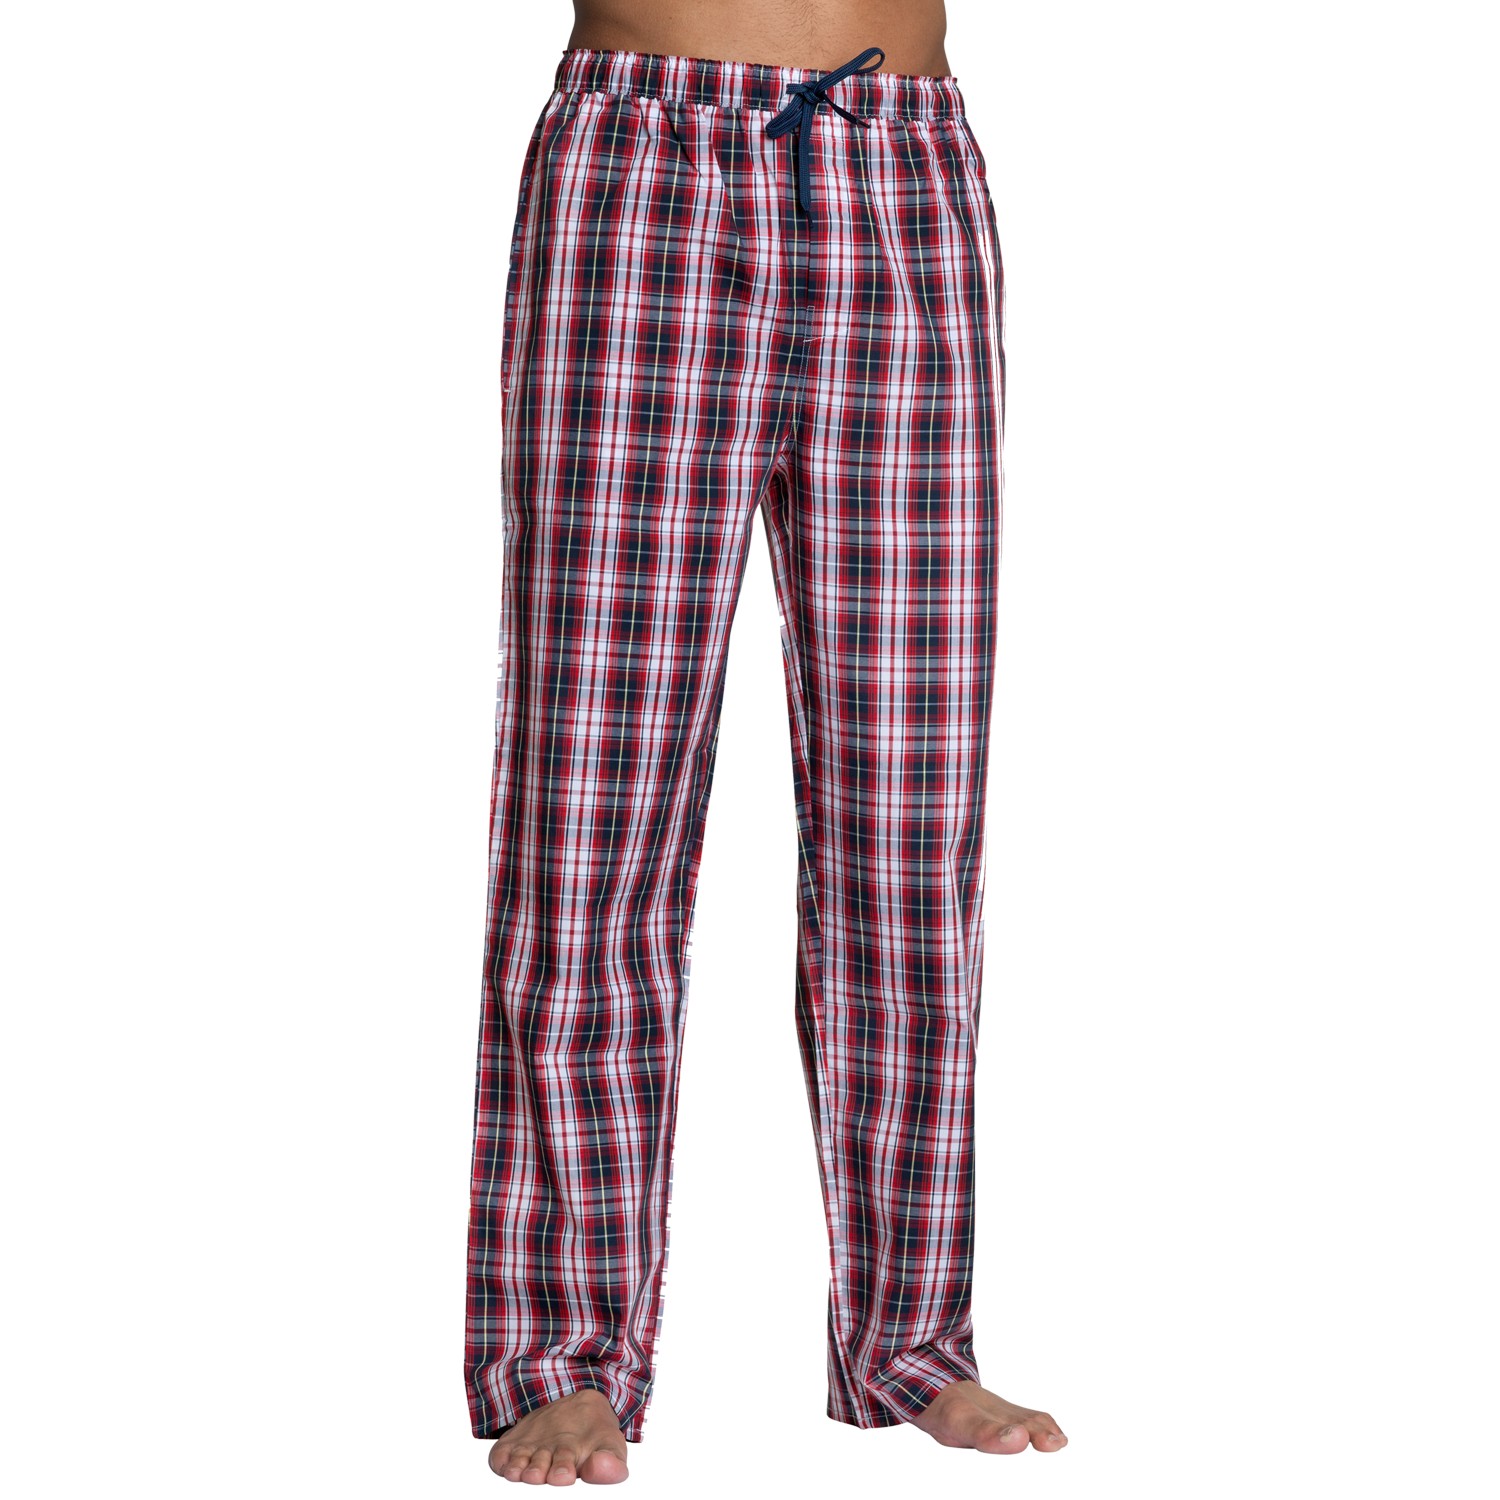 Gant Premium Woven Cotton Pyjamas Trousers Red - Nightwear - Underwear ...